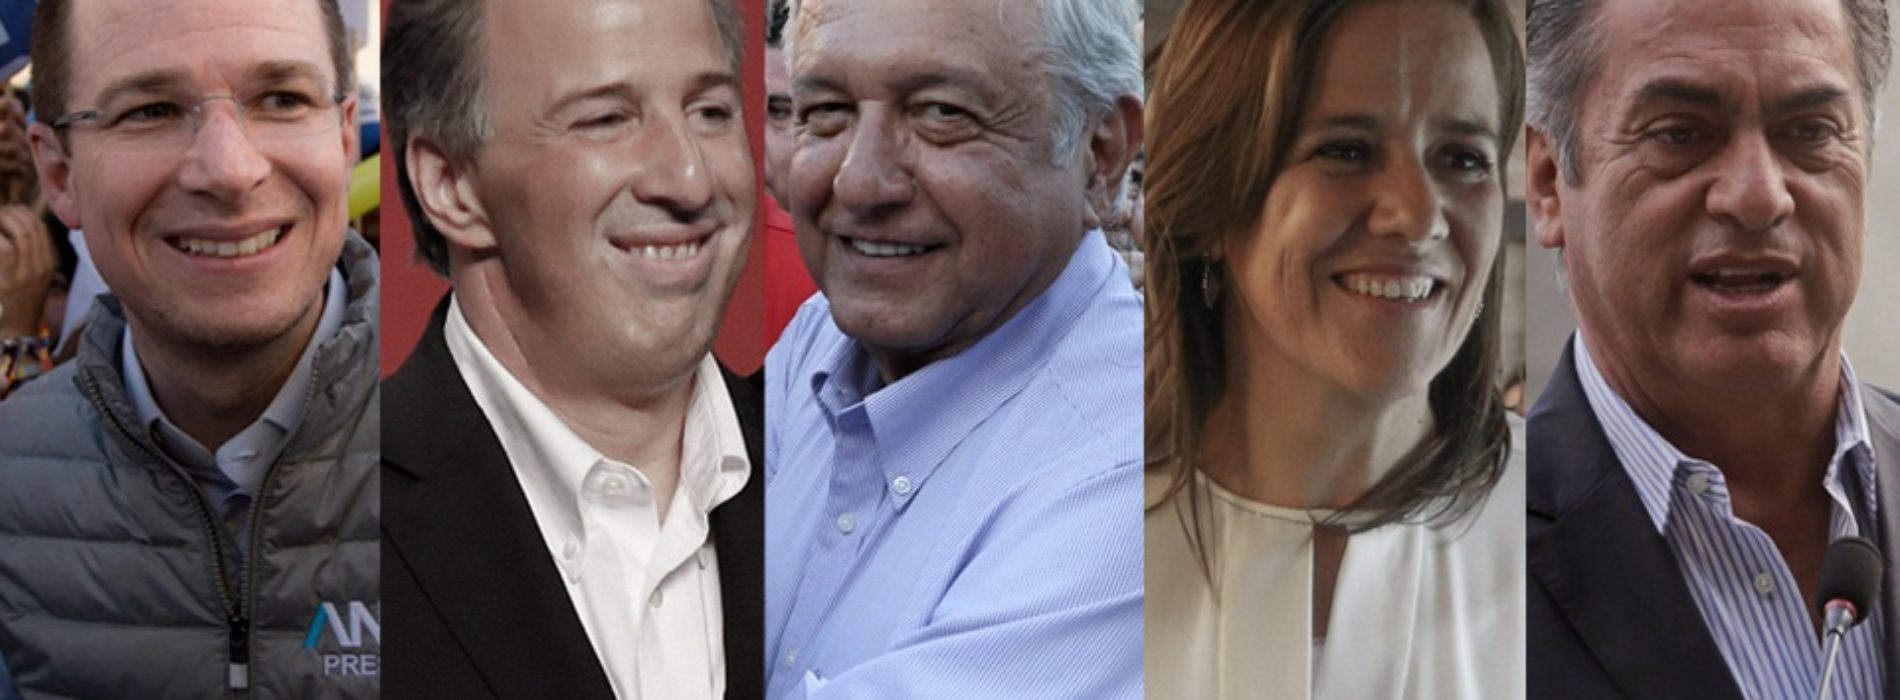 Candidatos presidenciales omiten información sobre gasto,
critica el INE; AMLO, el más cuestionado